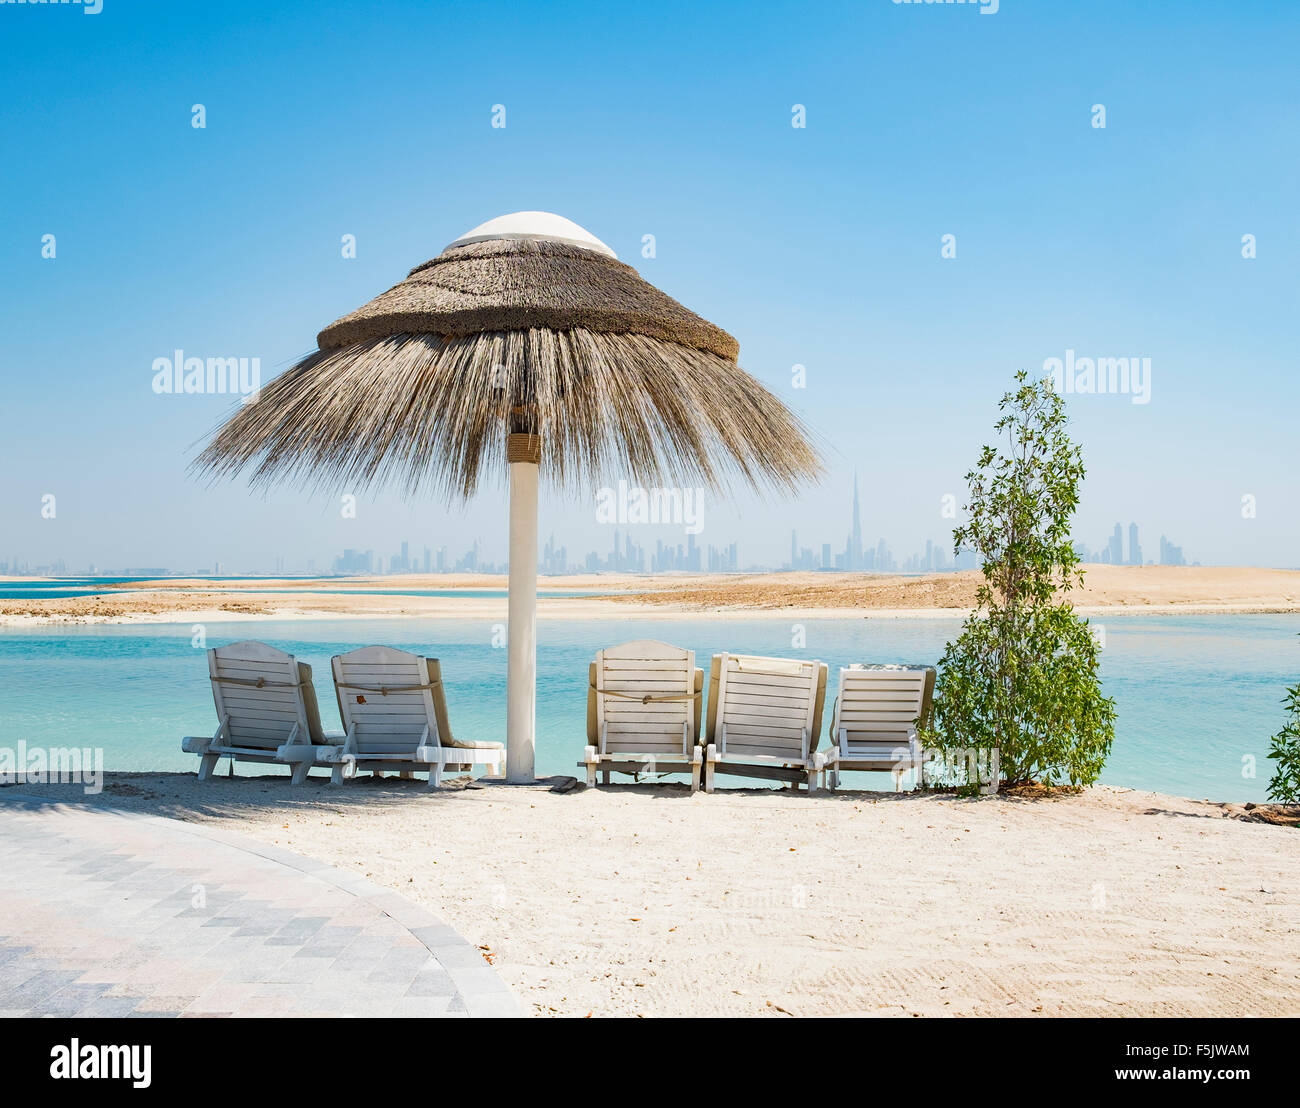 Blick auf die Insel Libanon Strandresort auf einen Mann machte Insel, Teil von The World Dubai Küste in Vereinigte Arabische Emirate Stockfoto